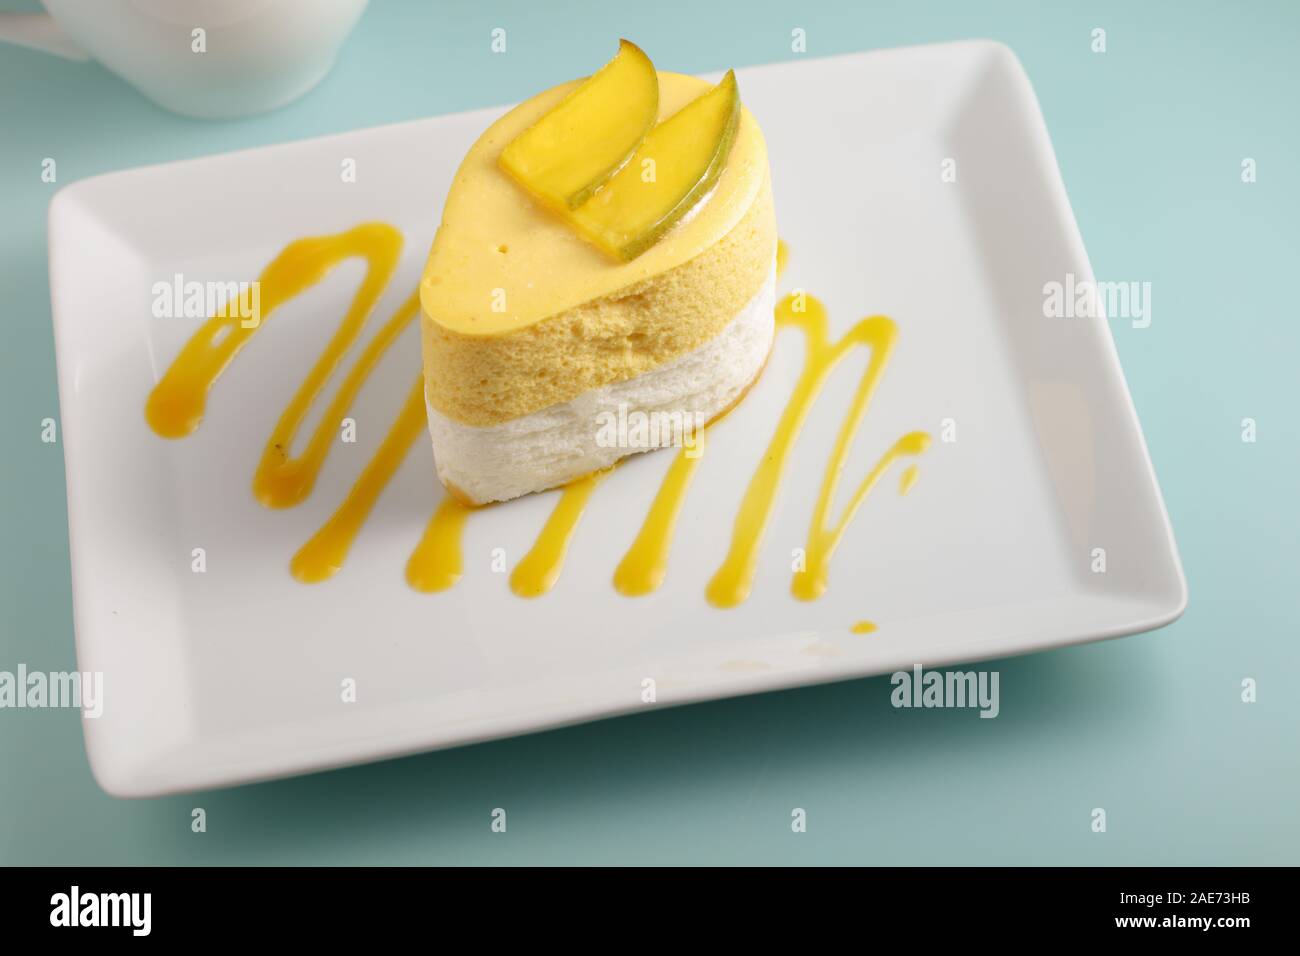 La mangue et de la crème dessert garni de tranches de mangue sur une assiette décorée avec de la purée de mangue Banque D'Images